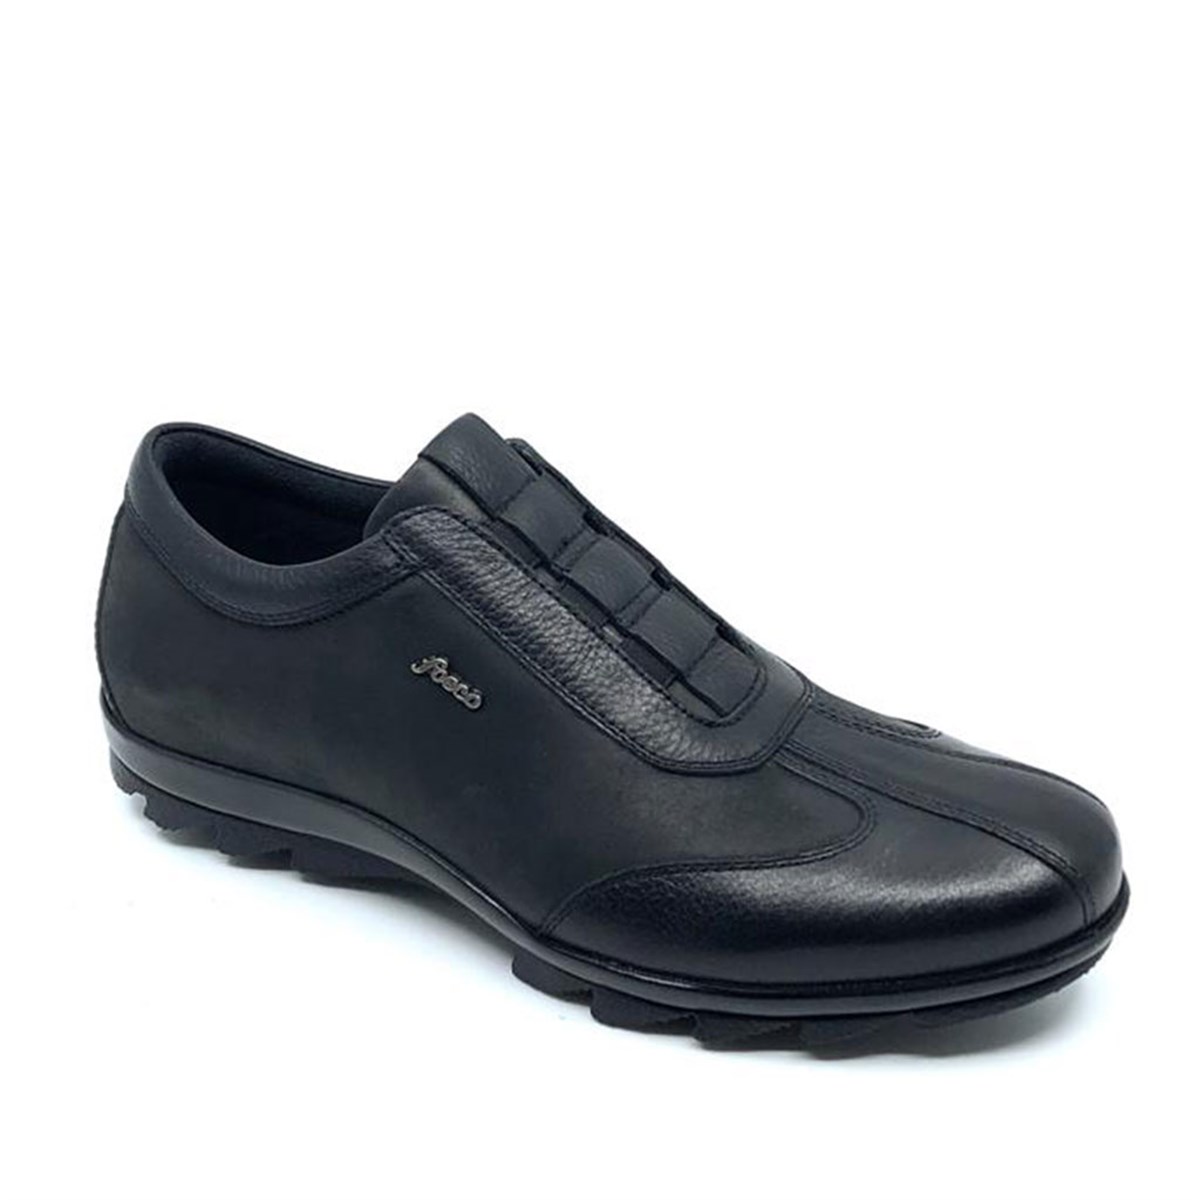 Erkek Siyah Bağcıksız Sıcak Astar Kışlık Günlük Ayakkabı, Renk: Siyah, Beden: 39